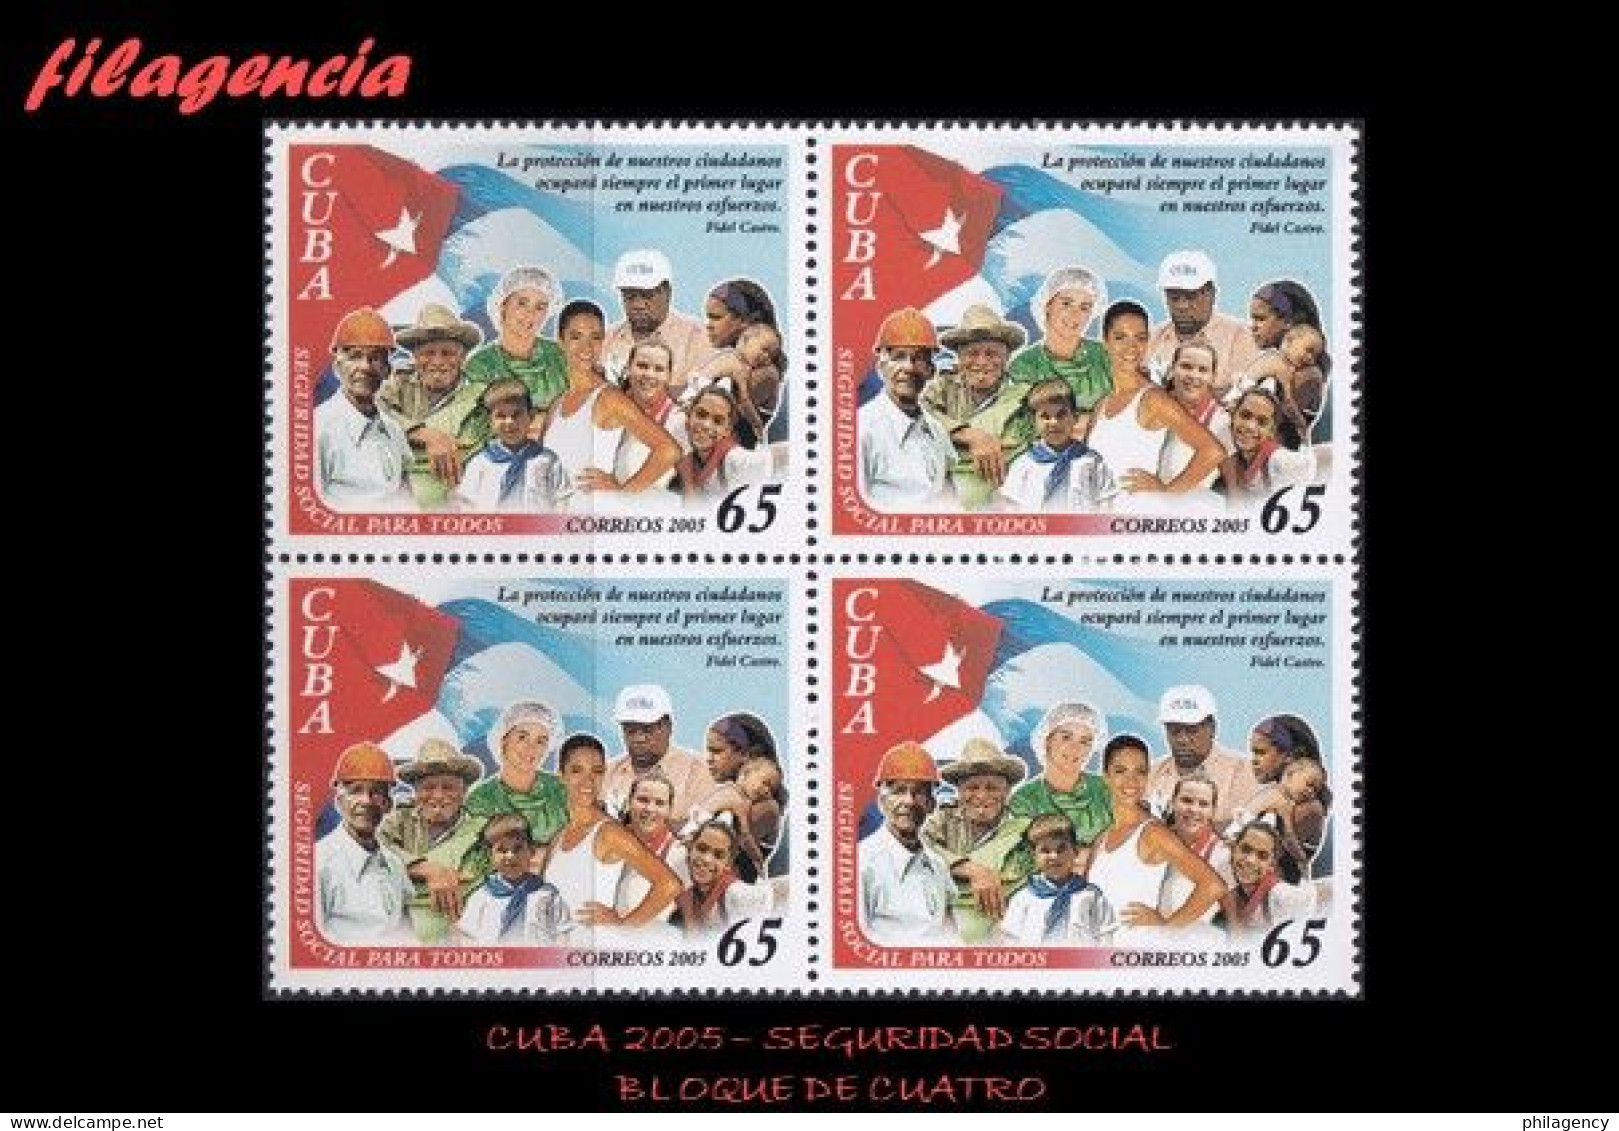 CUBA. BLOQUES DE CUATRO. 2005-15 SEGURIDAD SOCIAL PARA TODOS - Nuevos